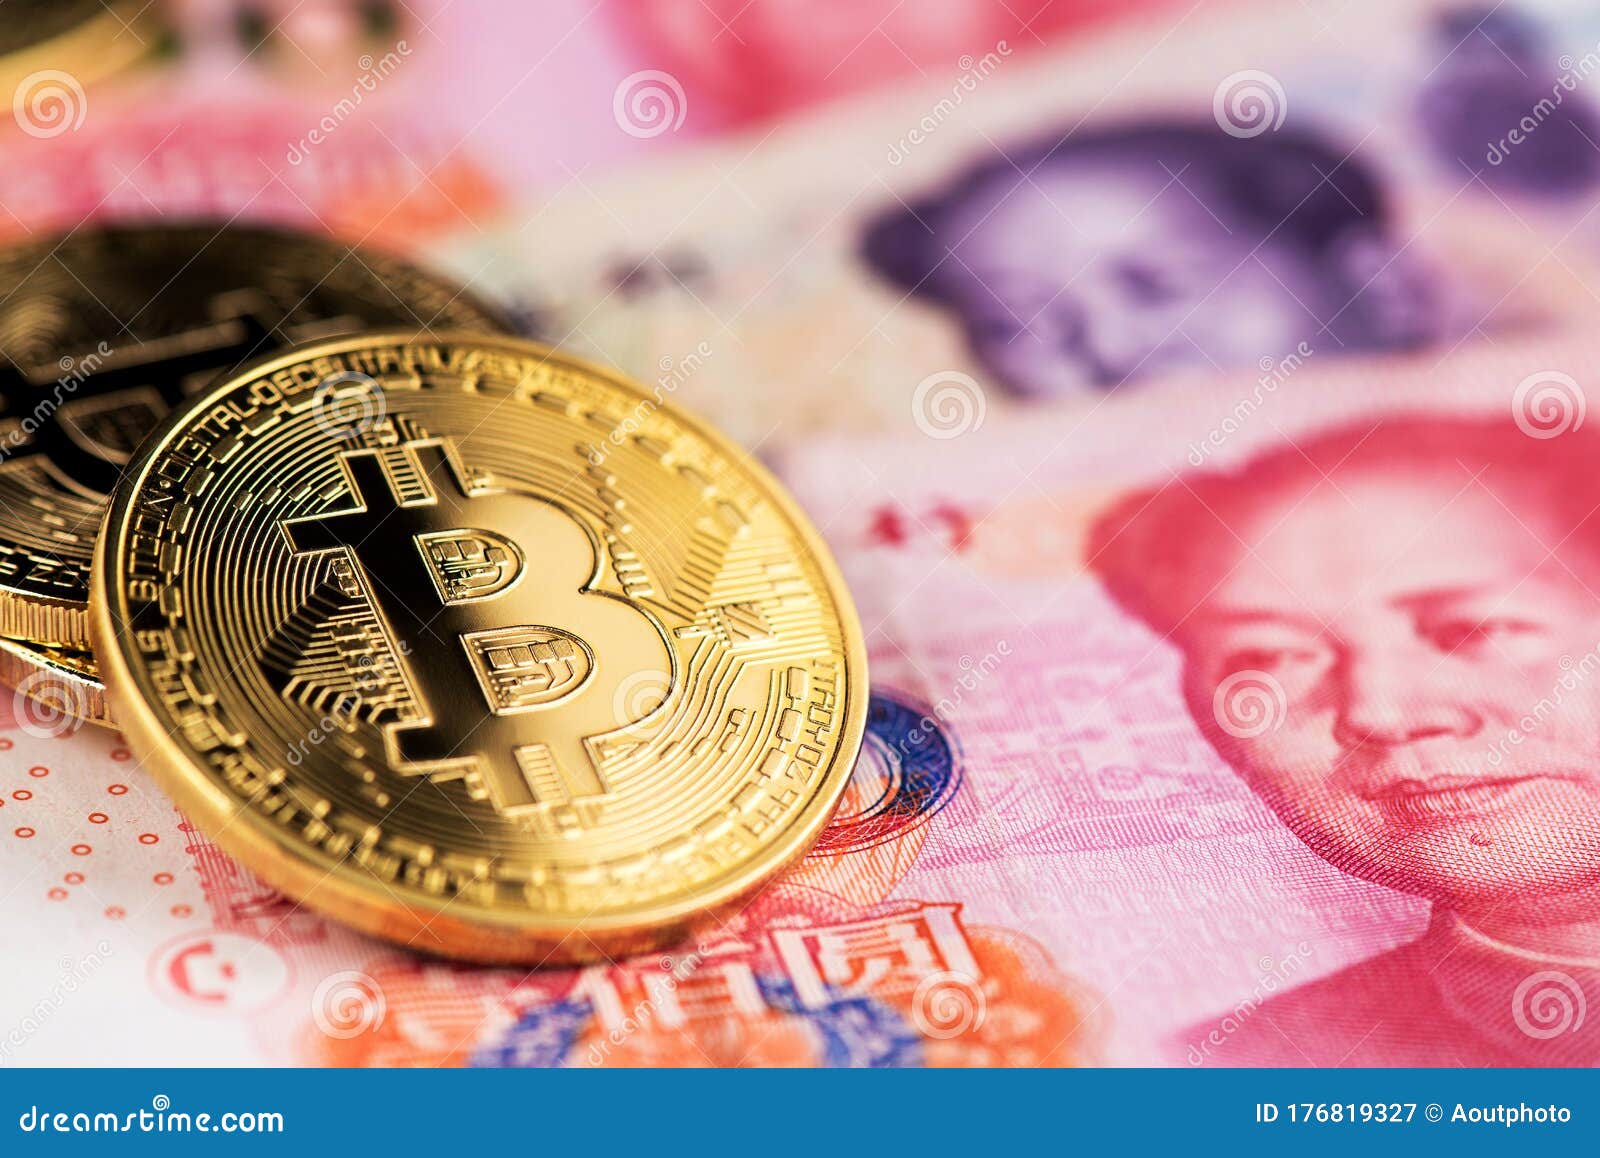 bitcoin yuan